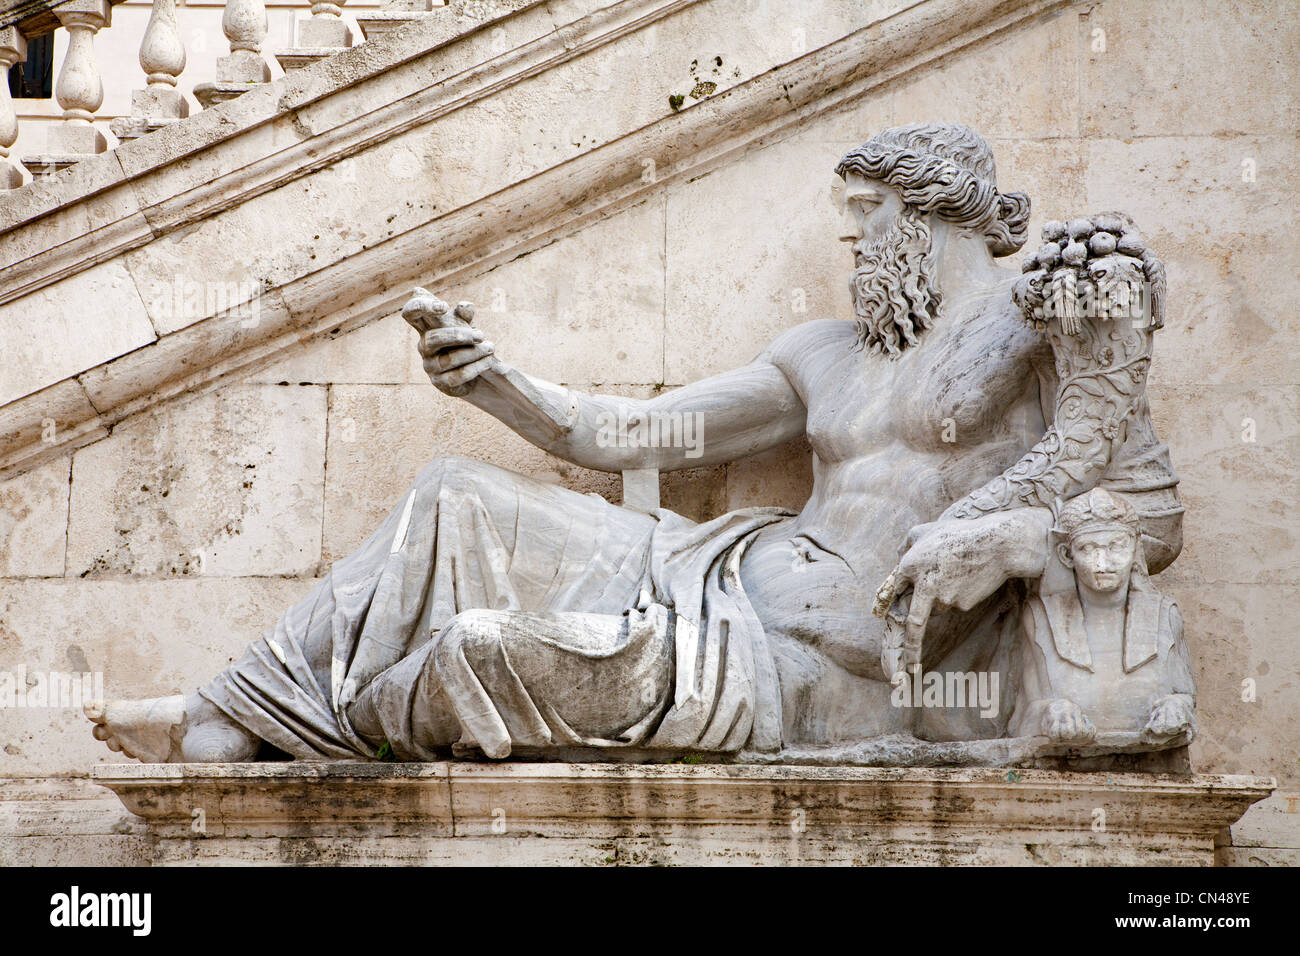 Rome - statue of Nile for Palazzo Senatorio Stock Photo